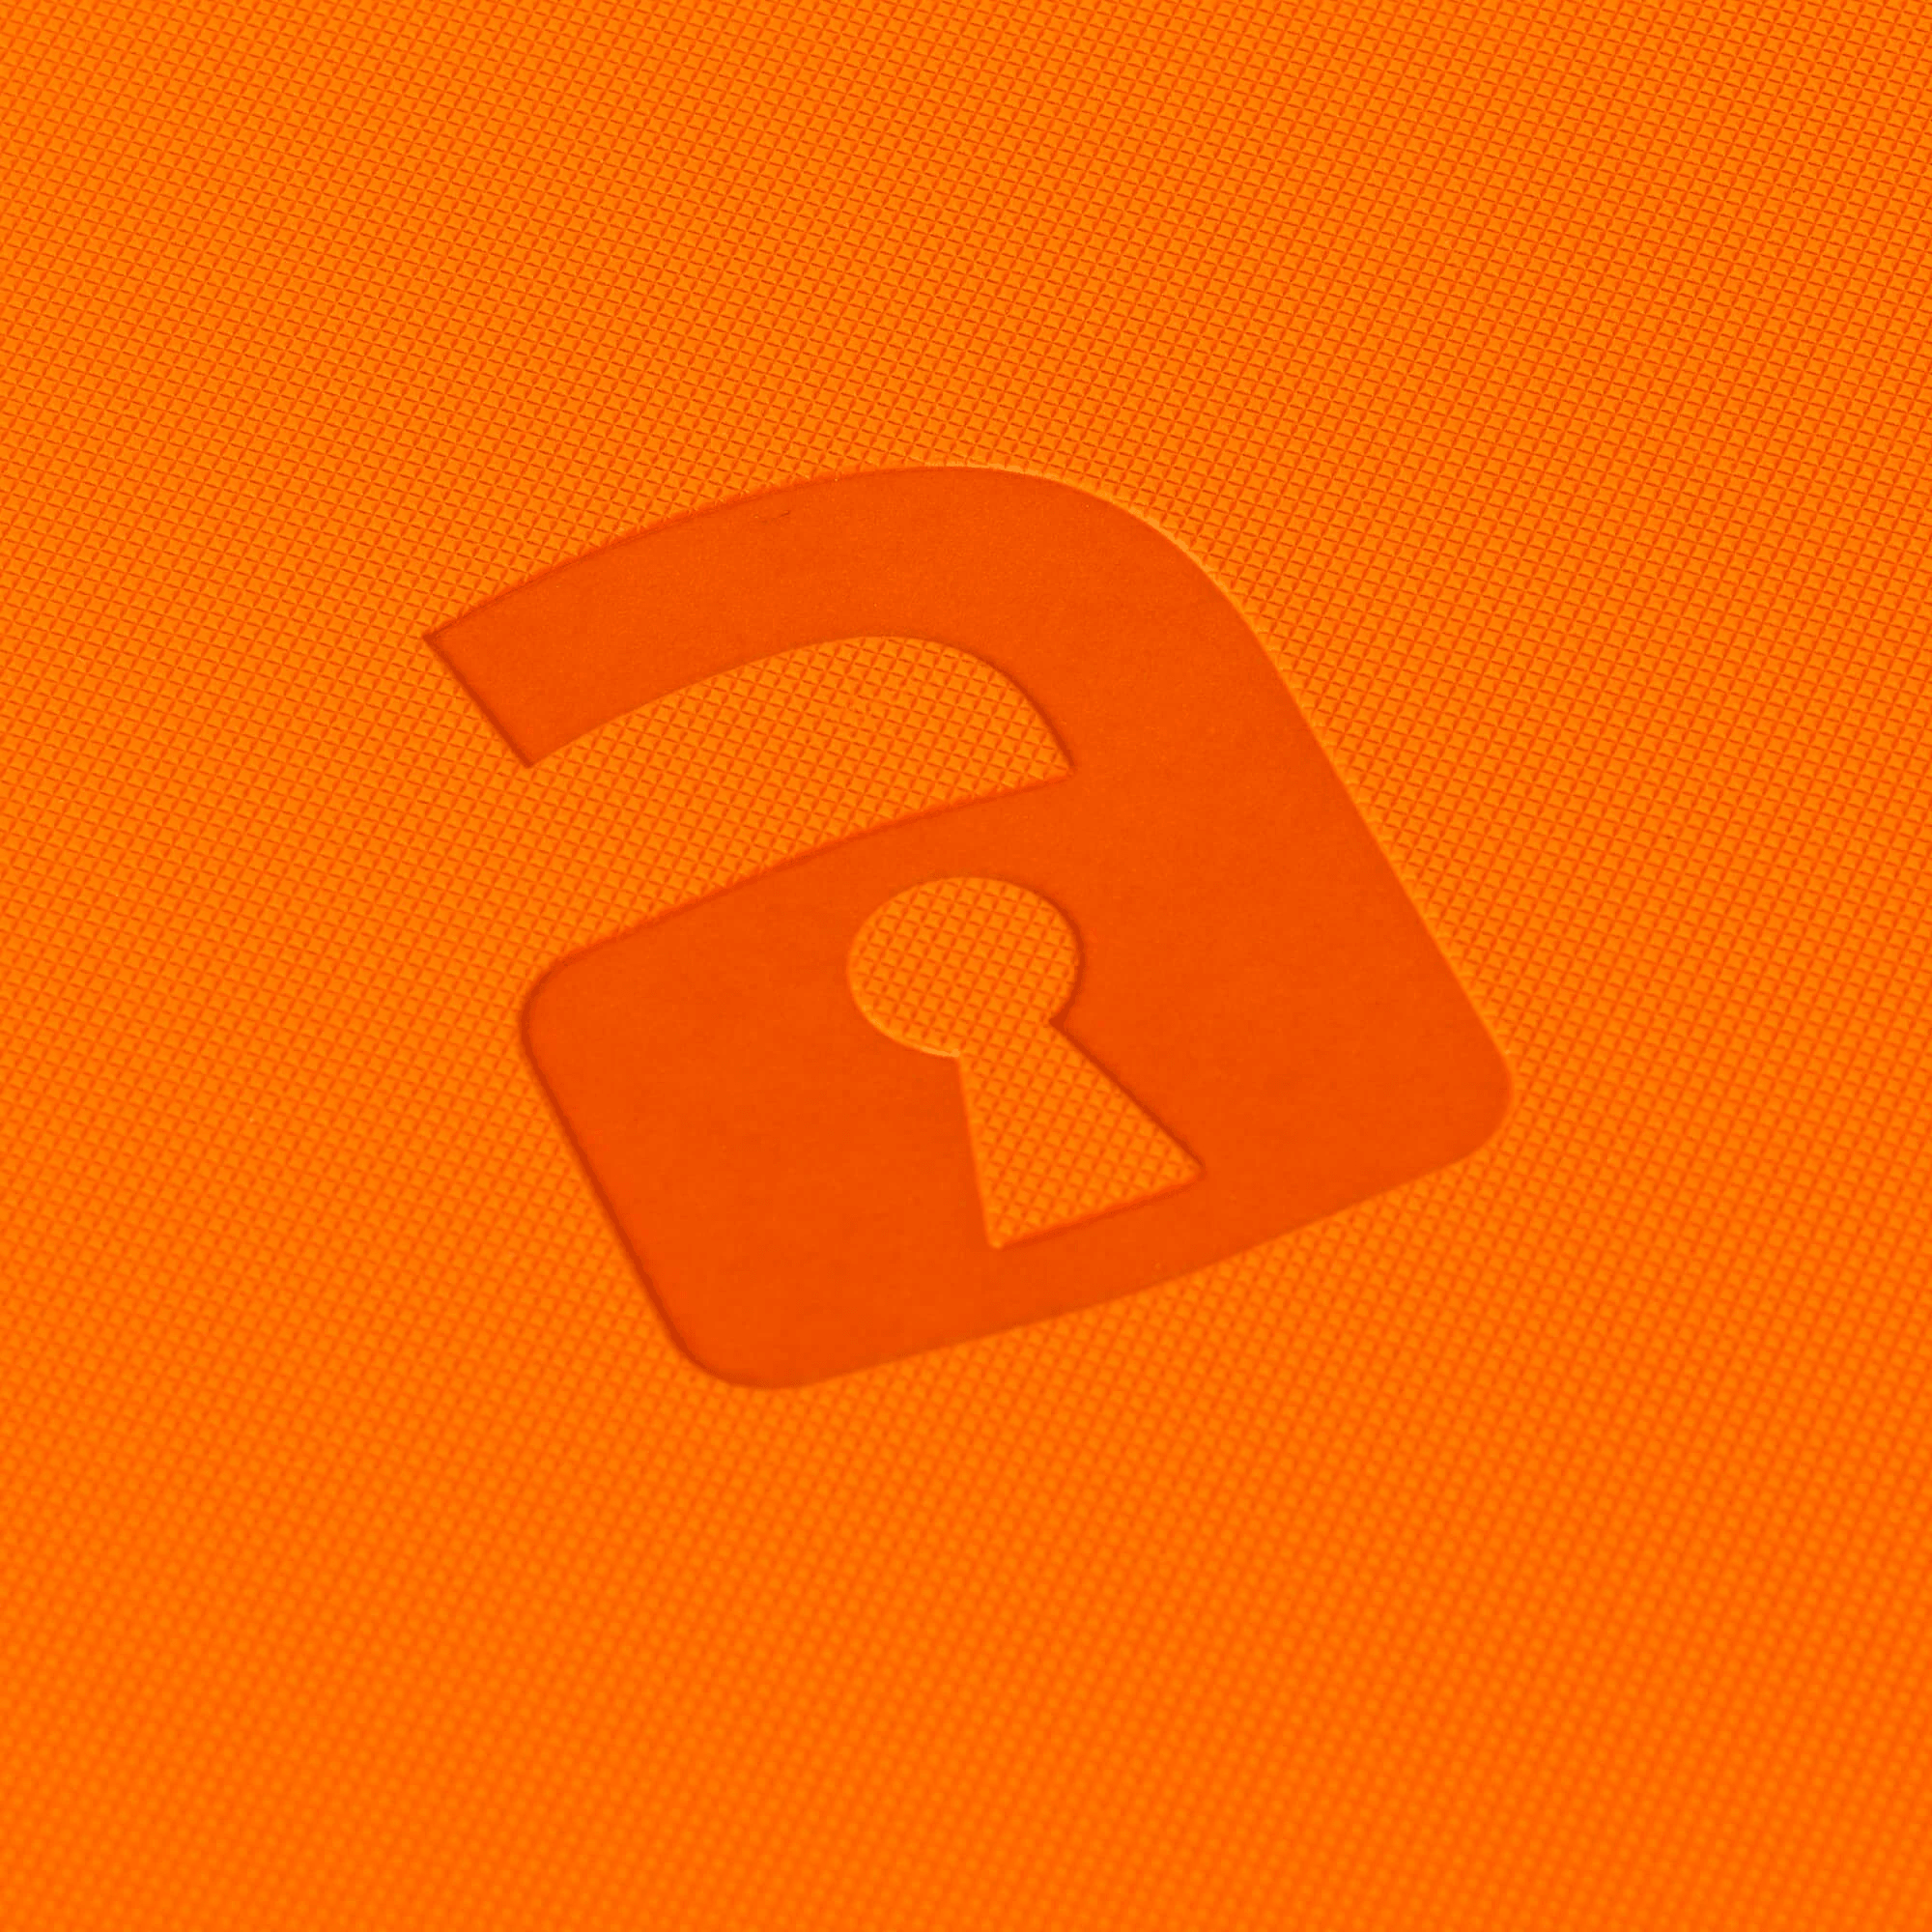 Vault X 9-Pocket Exo-Tec® Zip Binder - Just Orange - The Card Vault